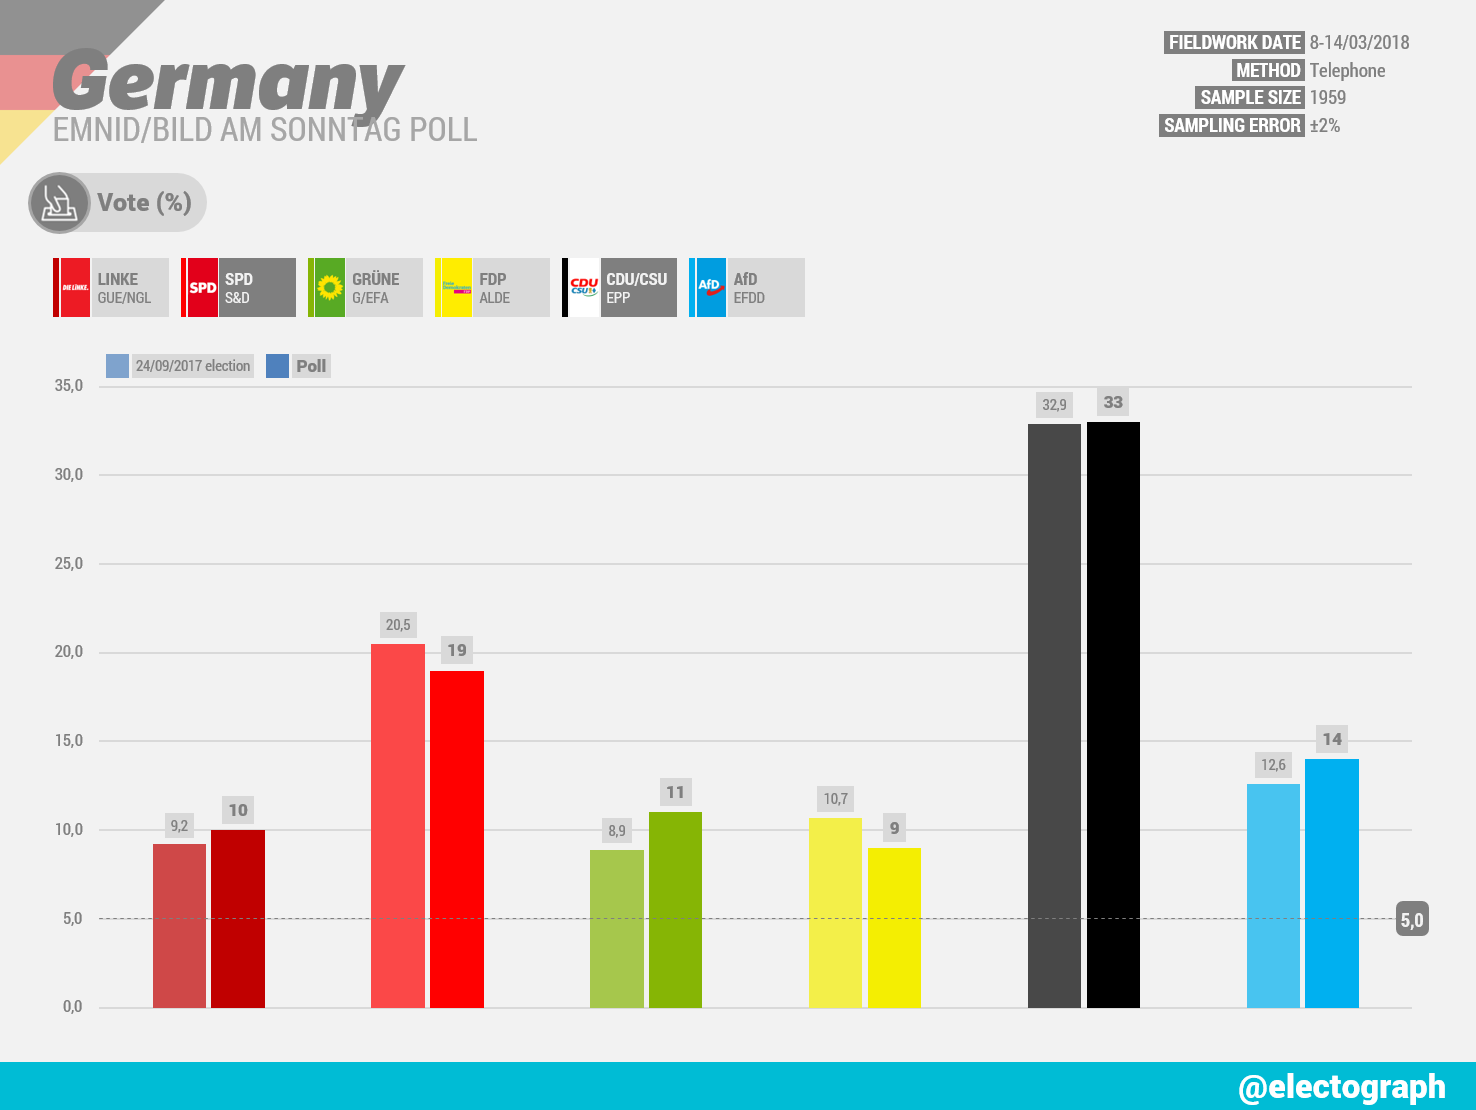 GERMANY Emnid poll chart for Bild am Sonntag, March 2018